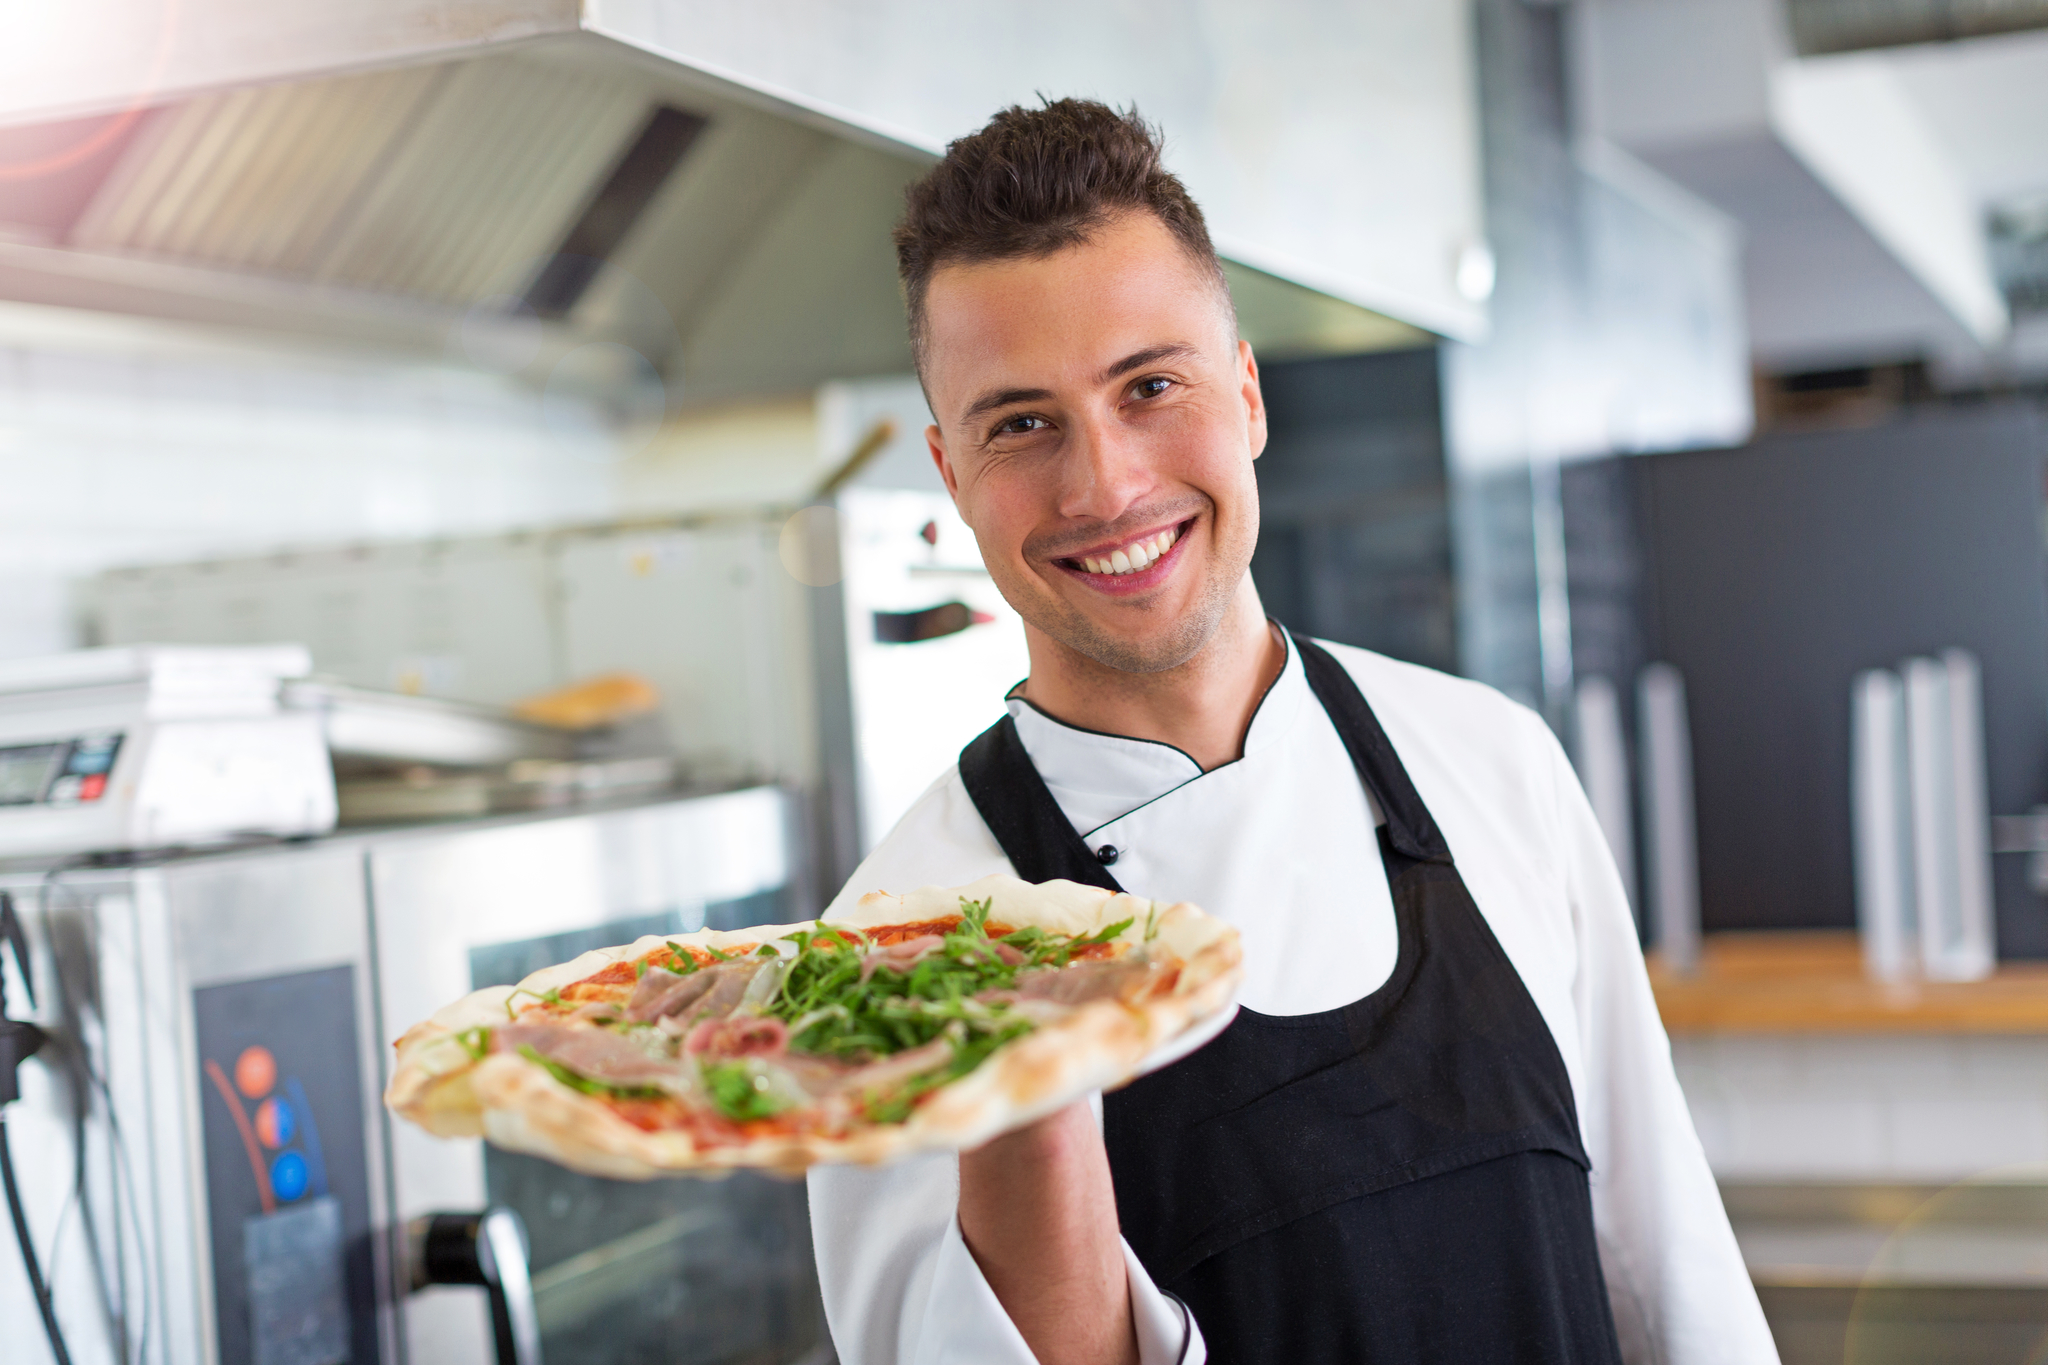 La última oferta viral de un empleo envidiable es de una cadena global de pizzerías para ser catador de pizzas.